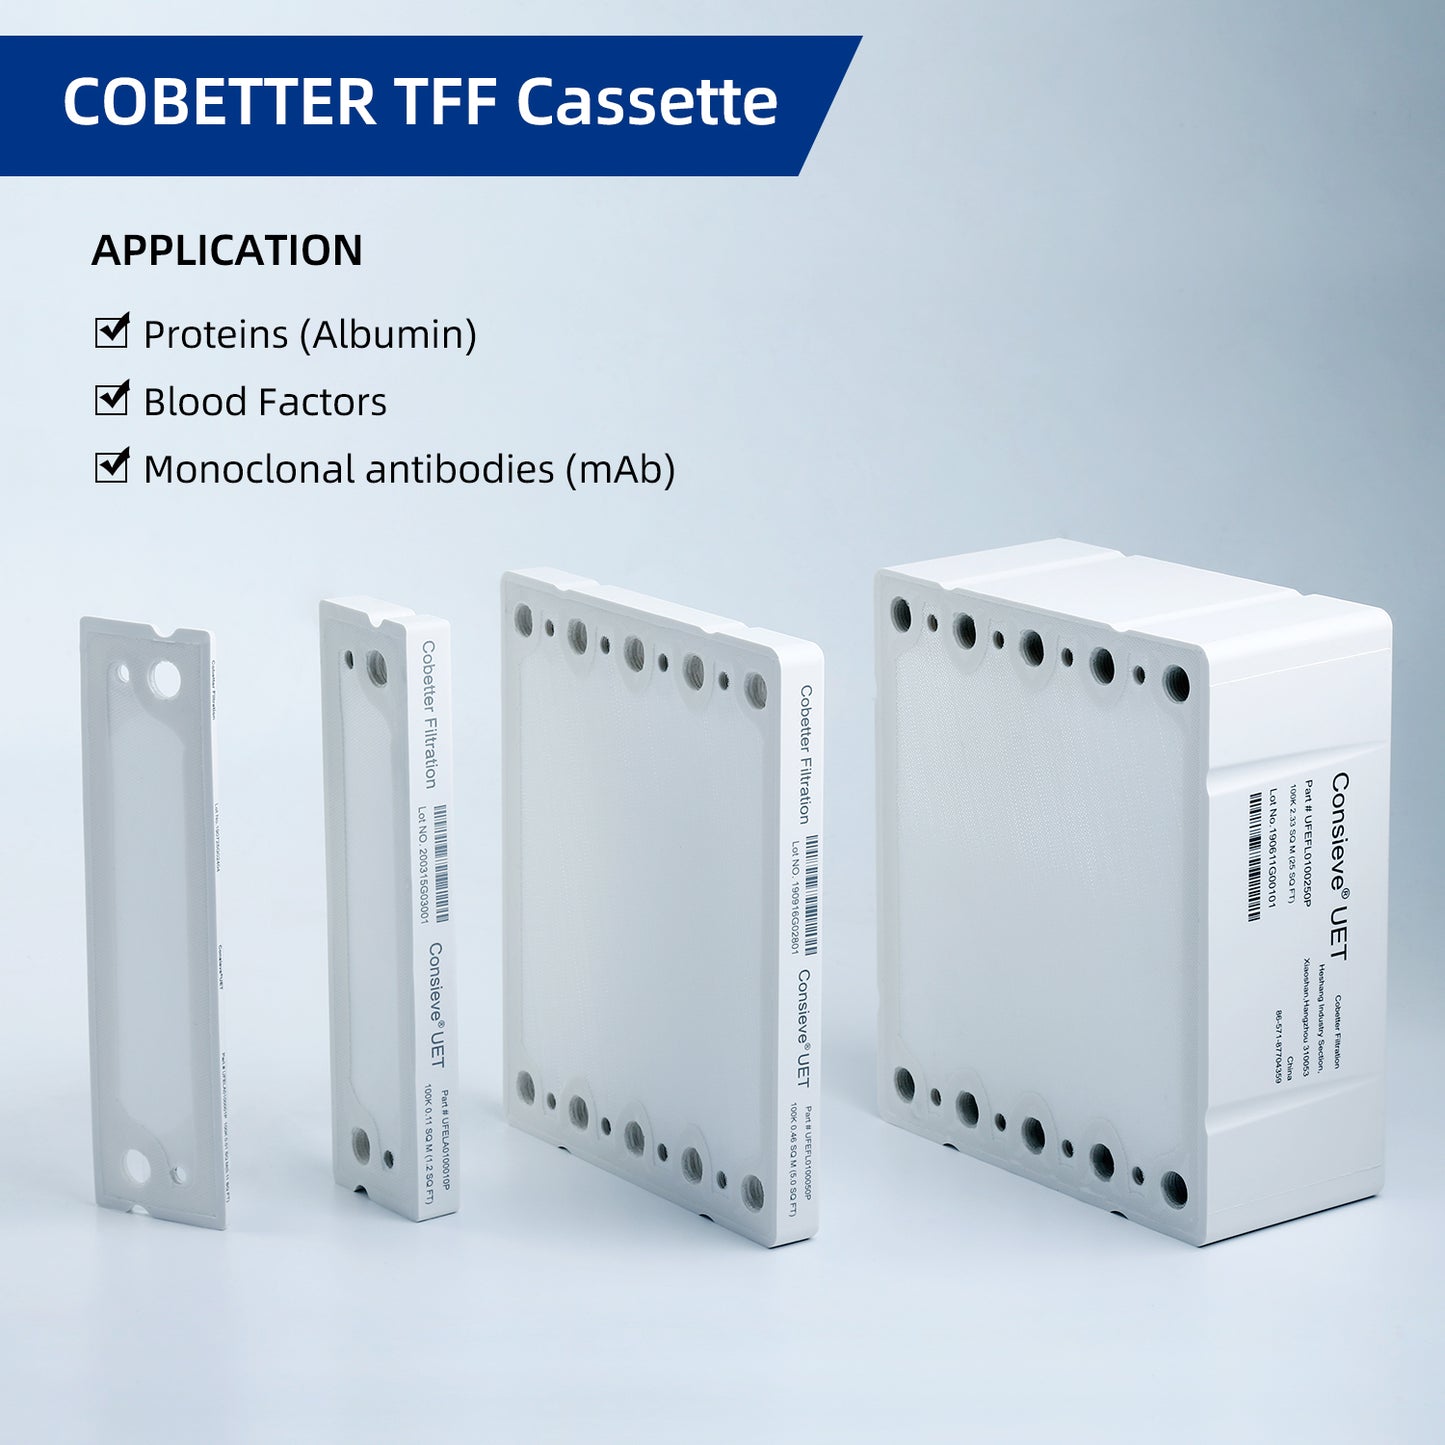 Cobetter pilot tff cassette PES membrane applications